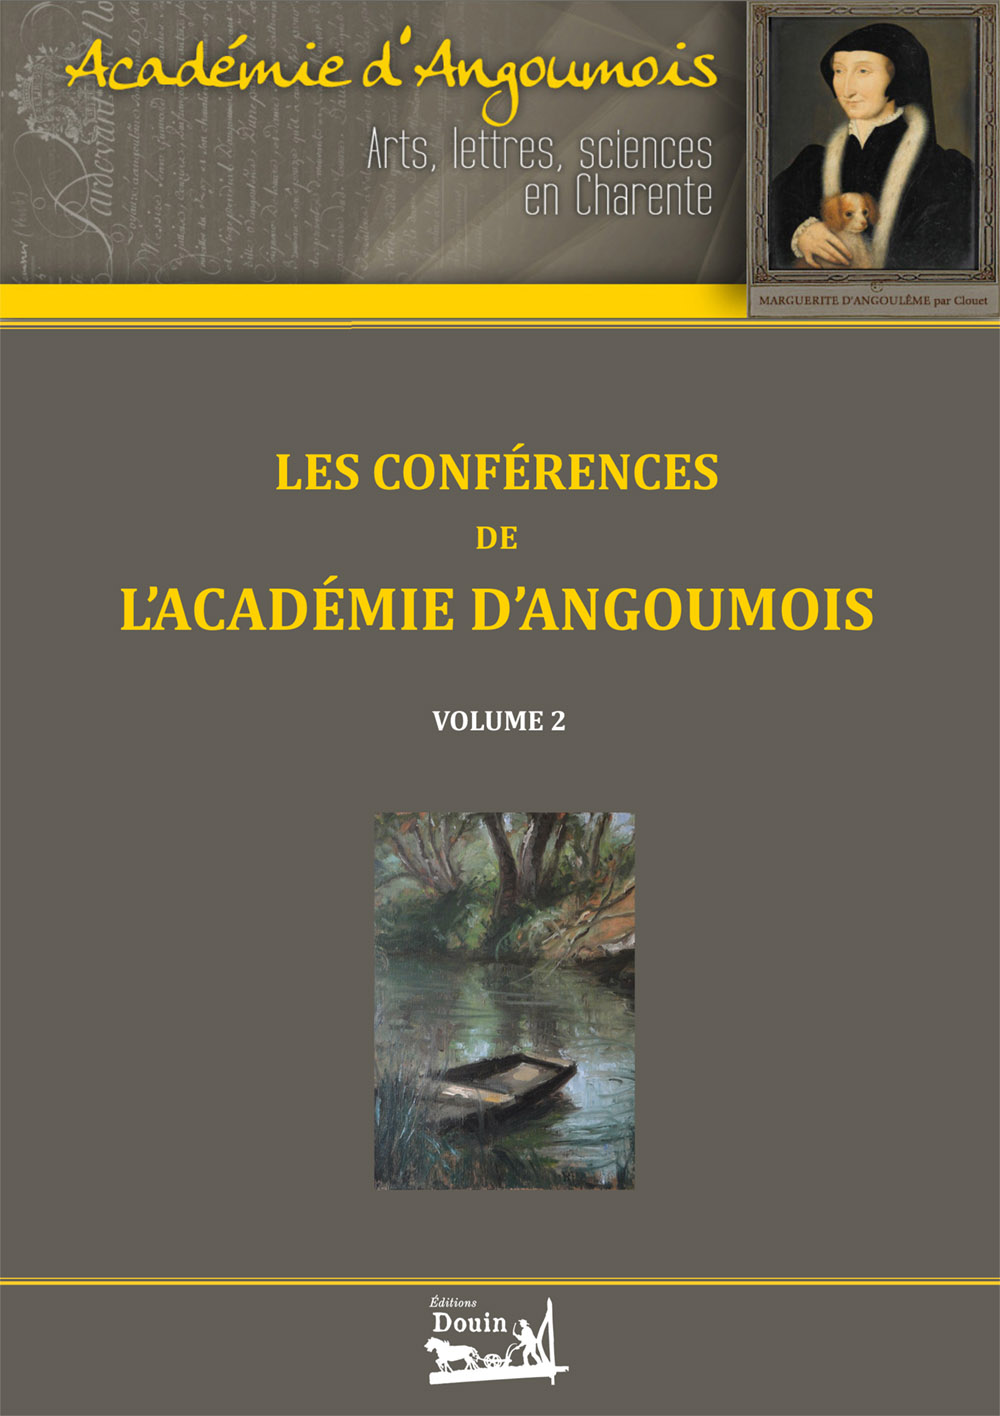 Les conférences de l'Académie d'Angoumois - Tome 2